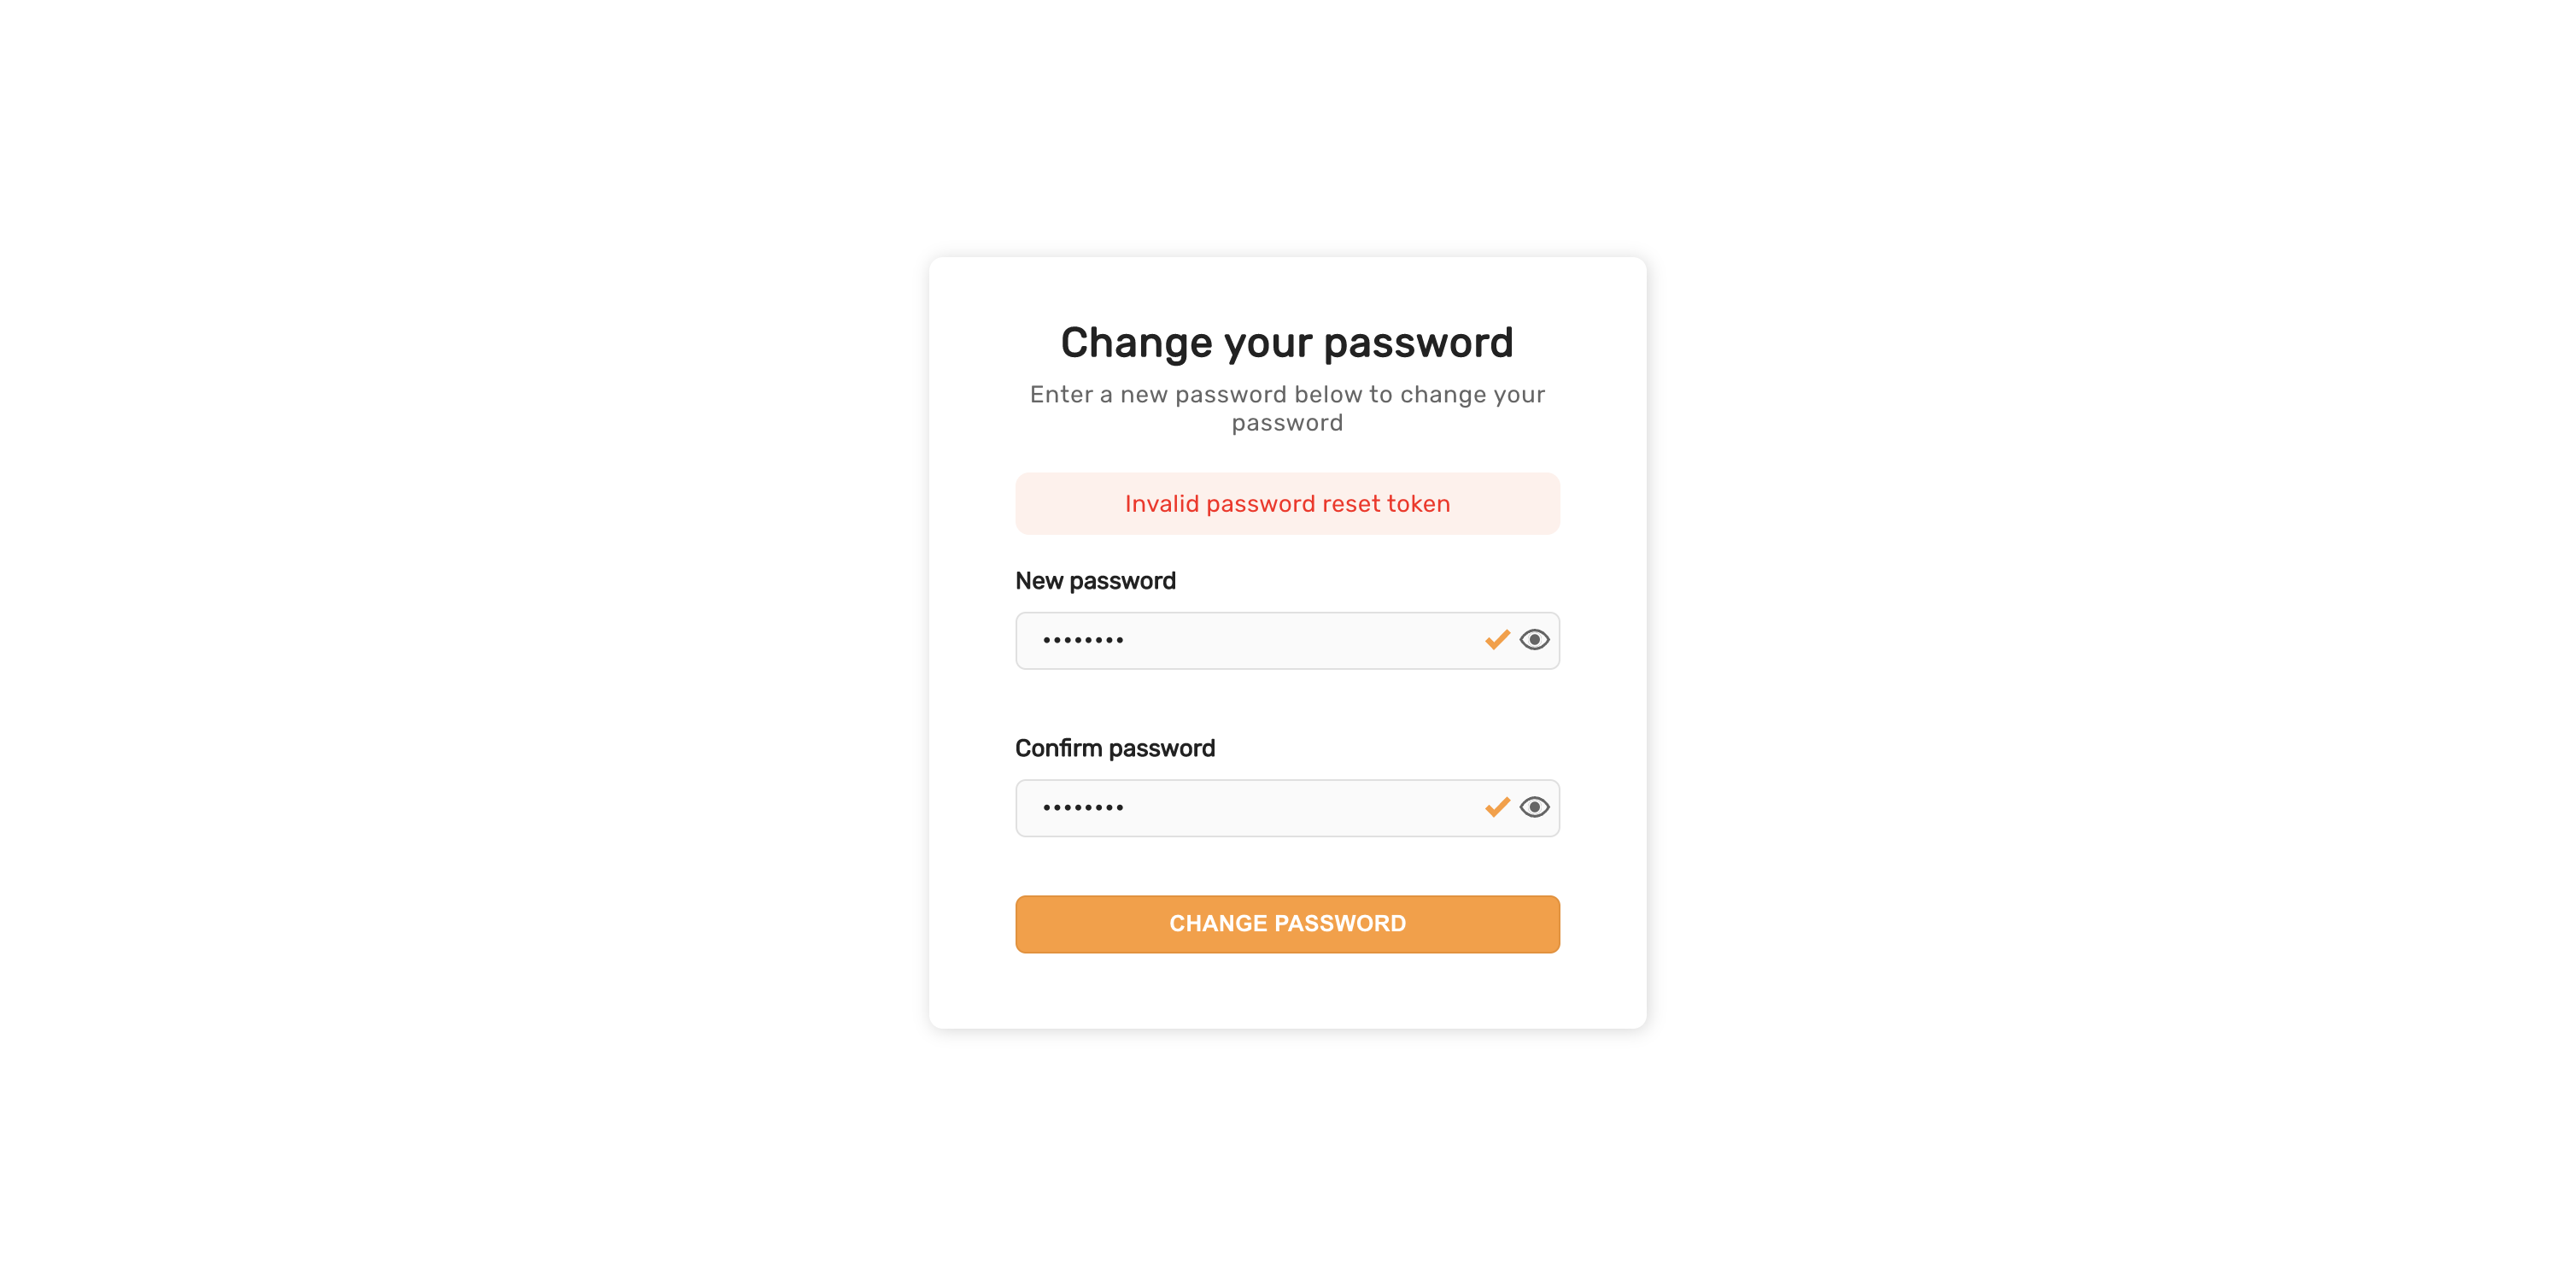 Enter new password for invalid token